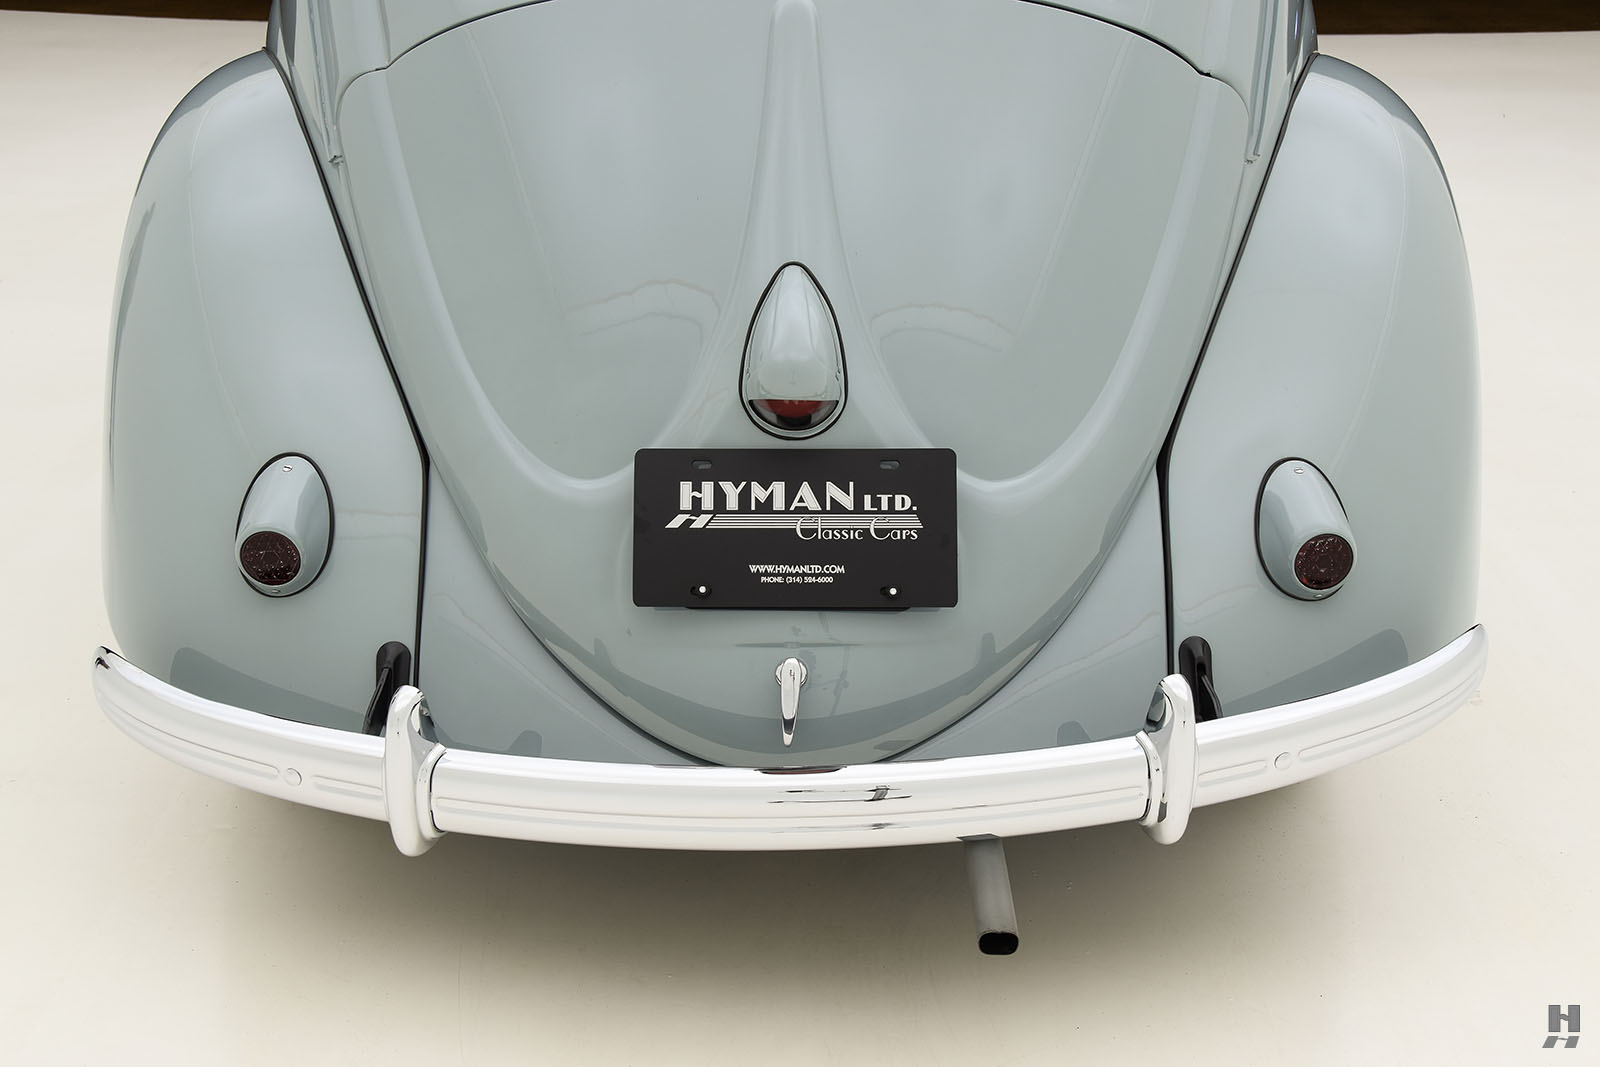 1967 volkswagen beetle